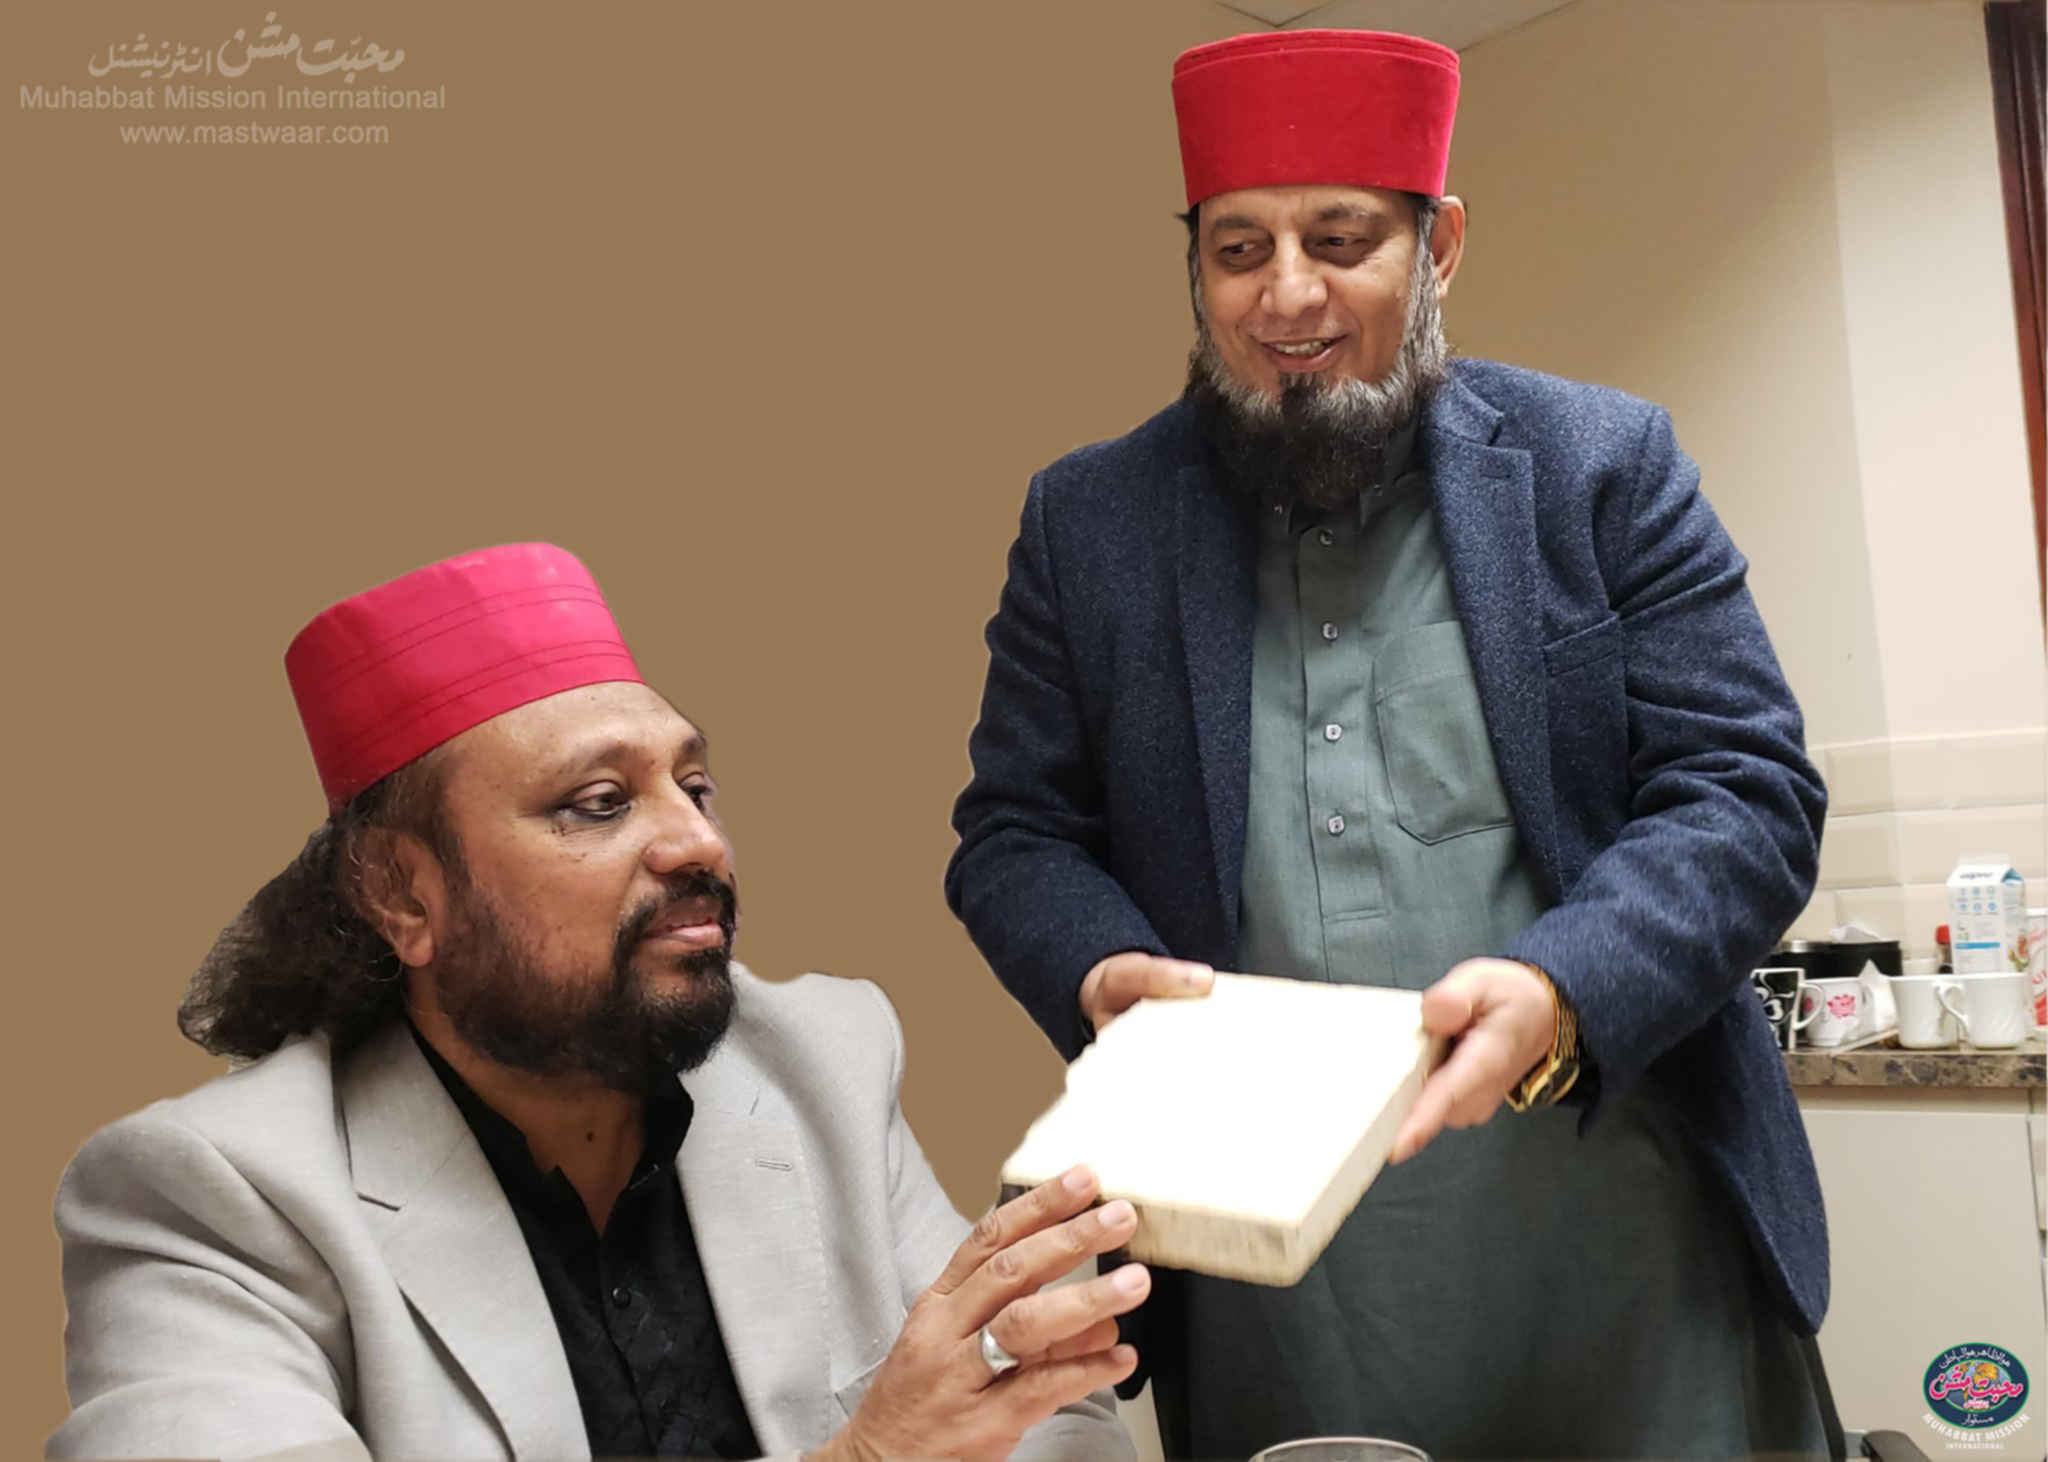 Sahibzada Mohammad Awais Owaisi Naqeebi Meets Makhdum Mahmood Mastwaar ...